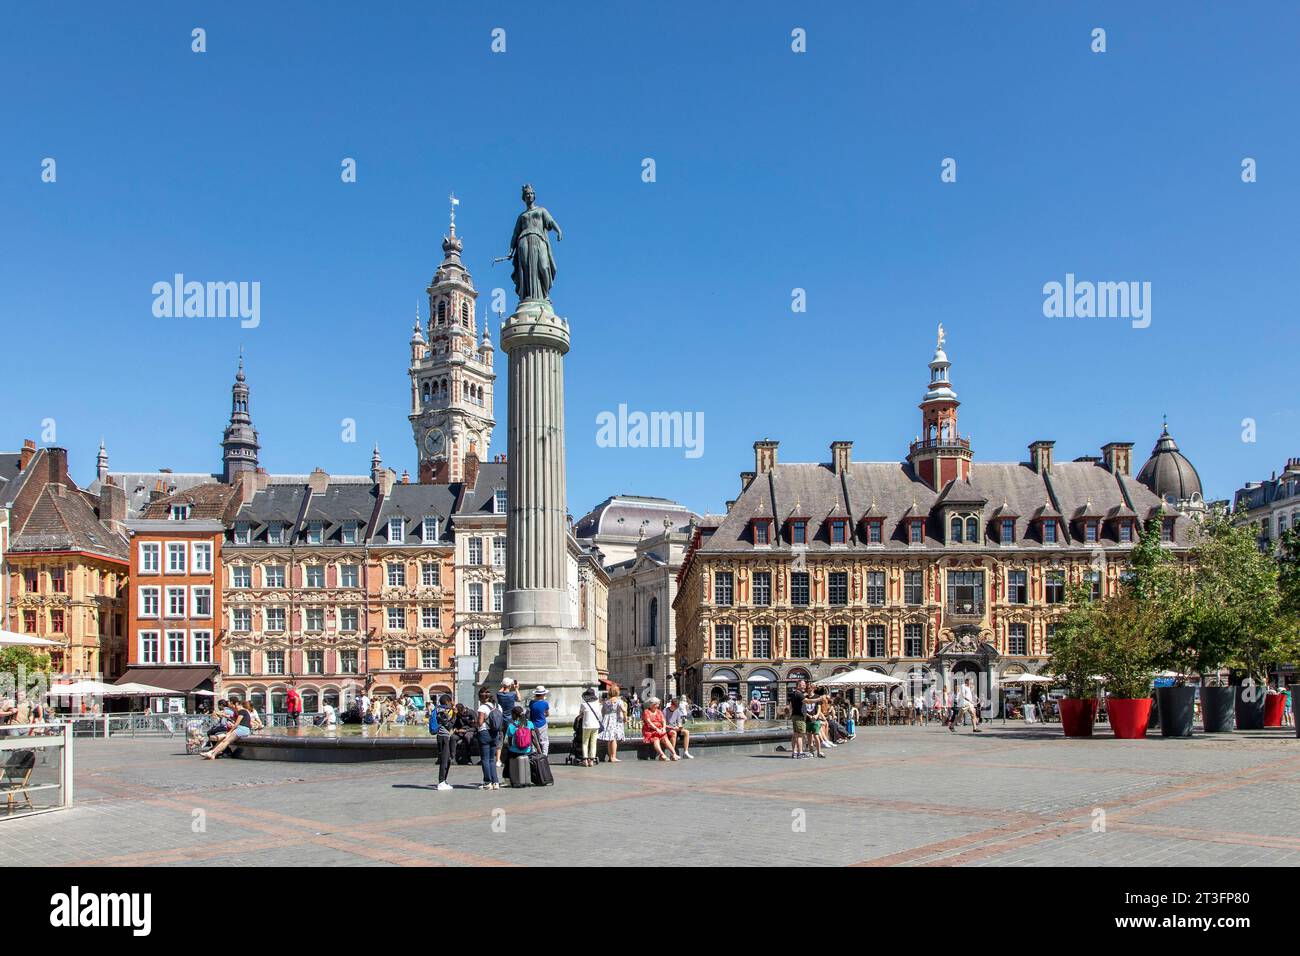 Frankreich, Nord, Lille, Place du Général De Gaulle oder Grand Place mit der Statue der Göttin auf der Säule, dem Glockenturm und der alten Börse Stockfoto